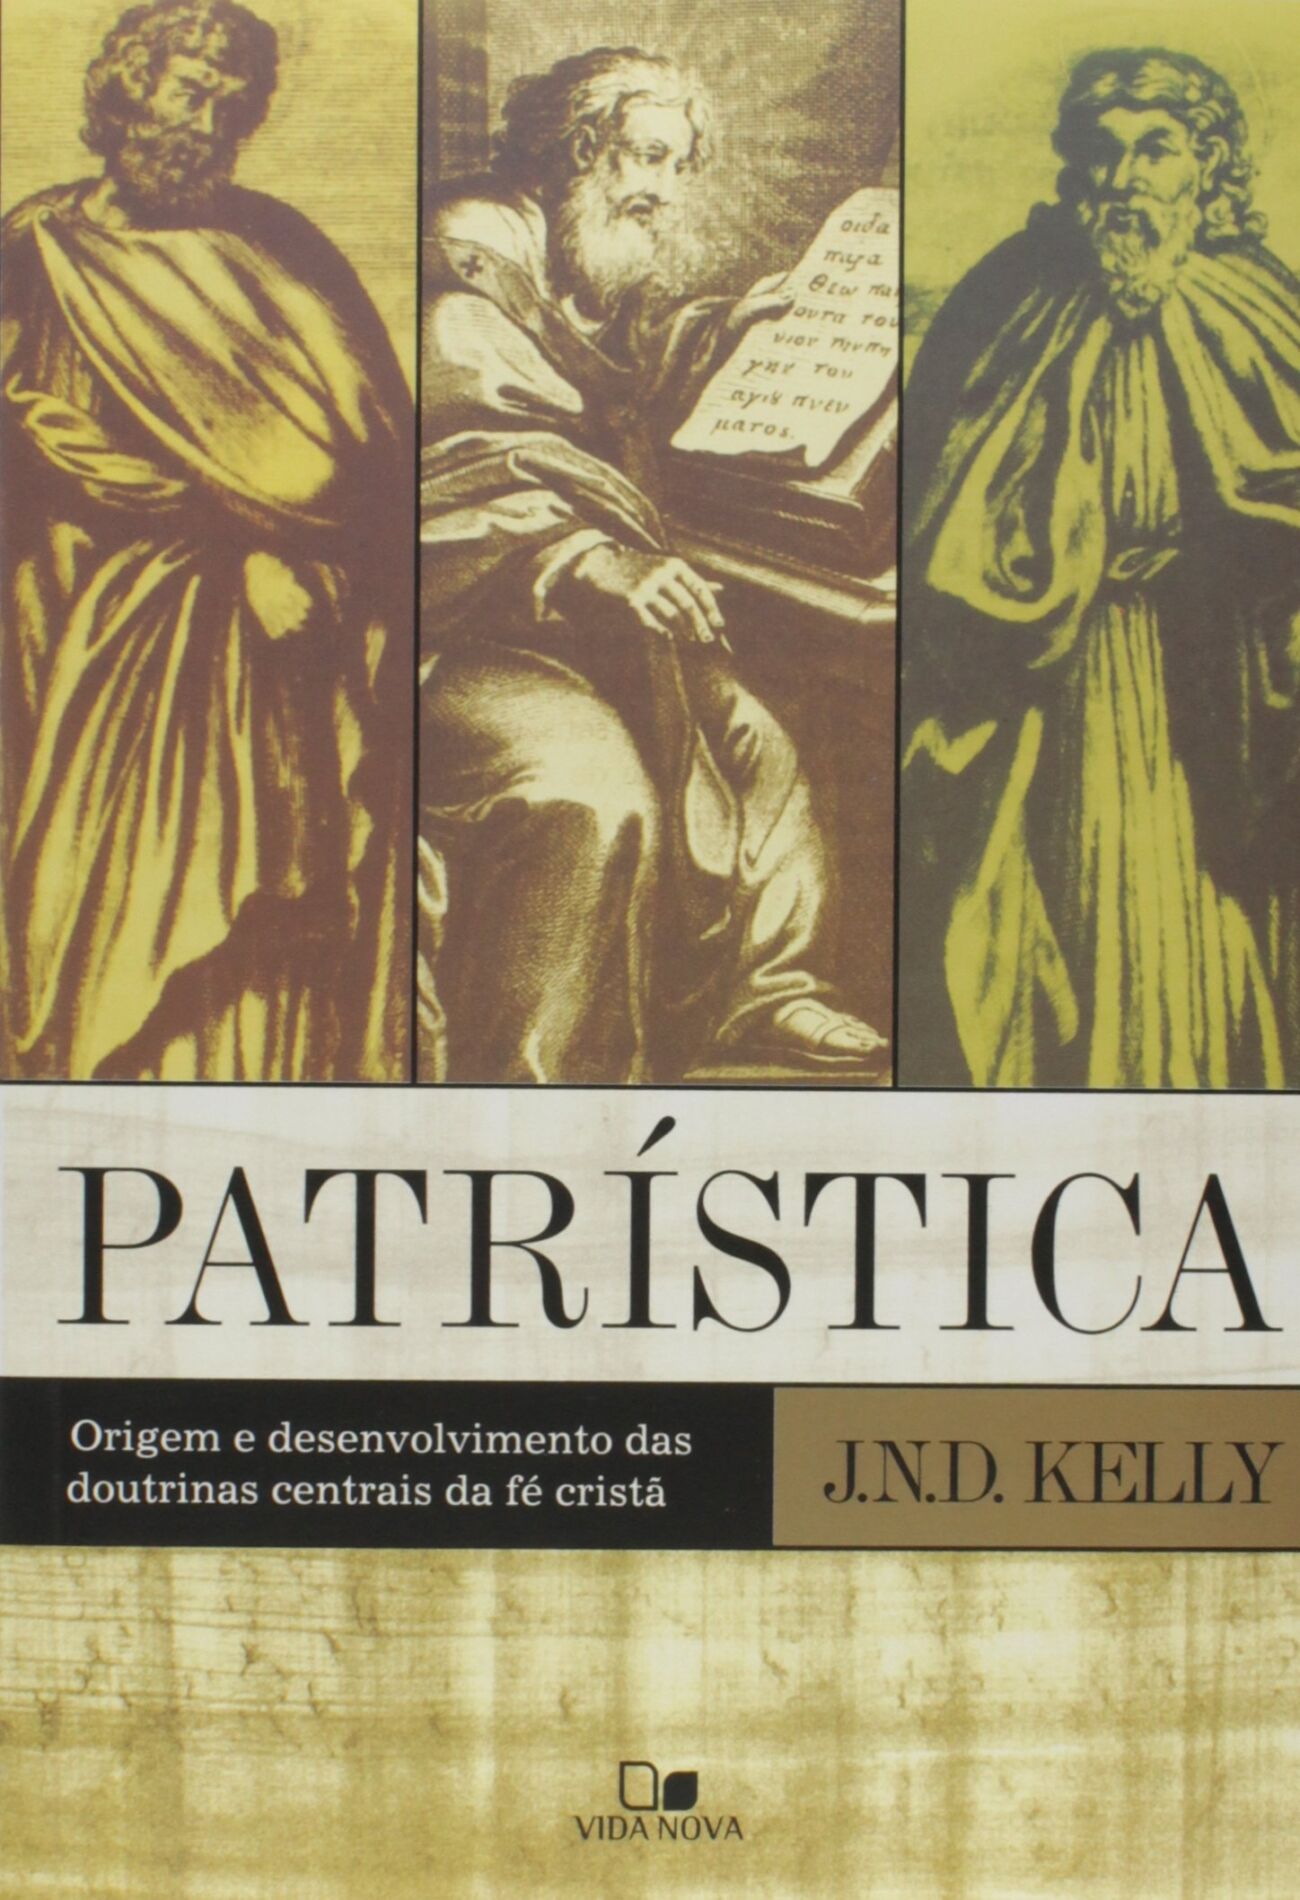 Patrística – J. N. D. Kelly